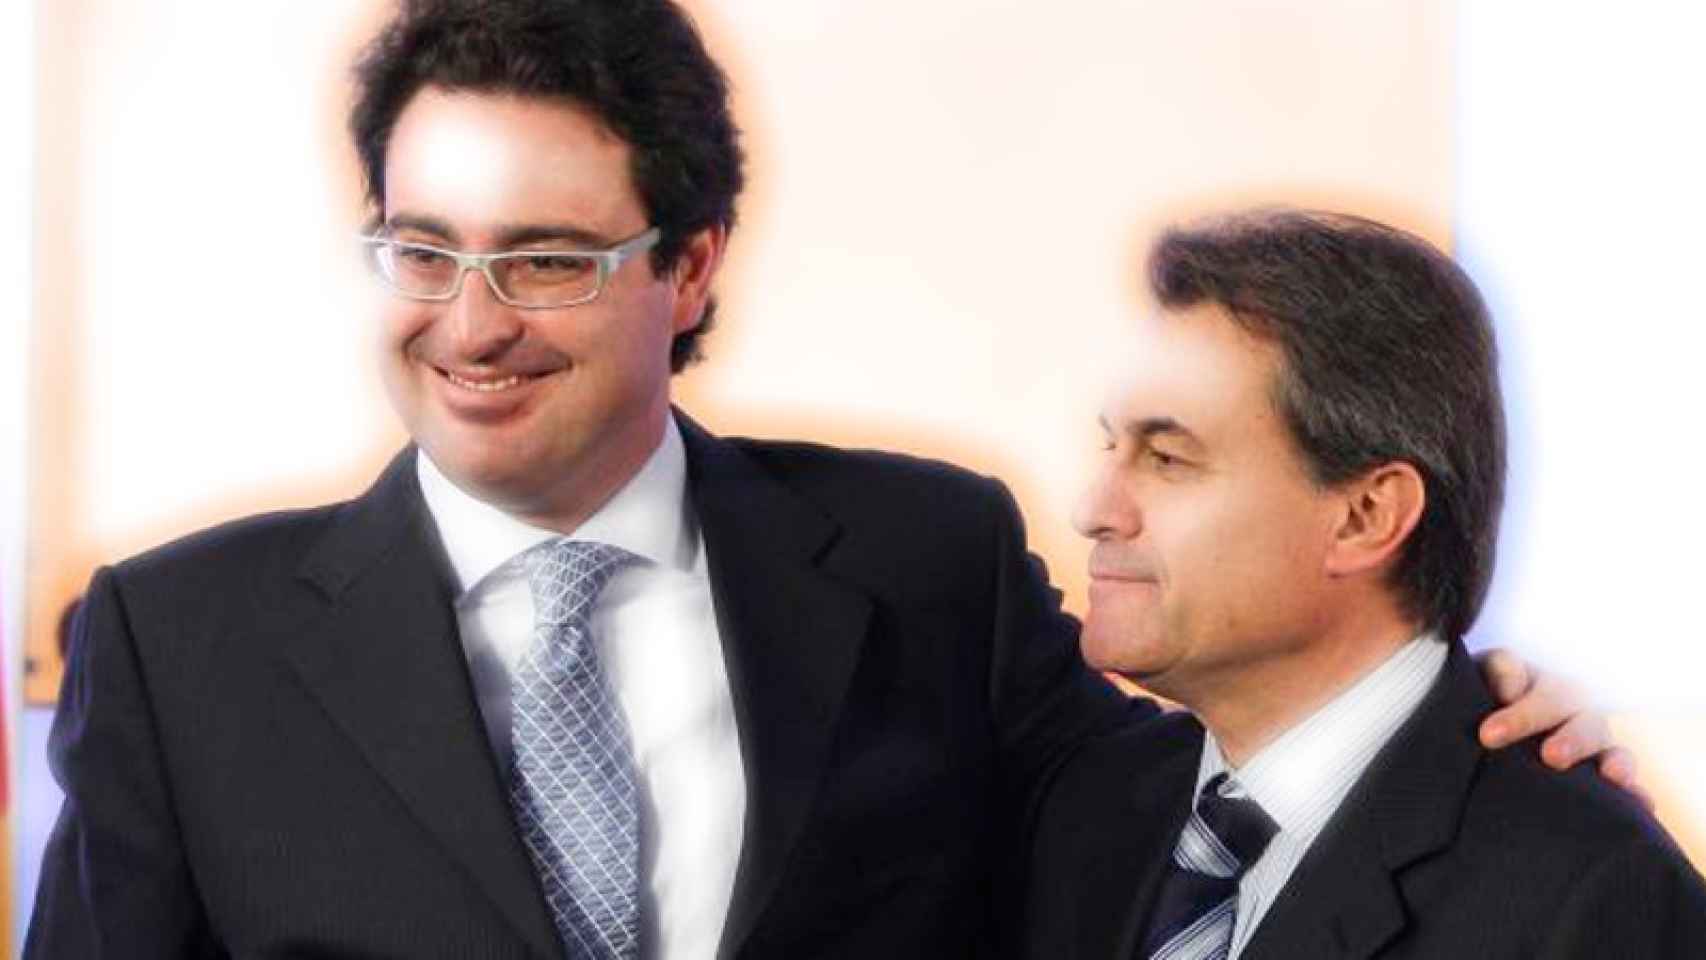 David Madí y Artur Mas, durante la rueda de prensa en que el primero anunció que abandonaba la política activa, en diciembre de 2010.